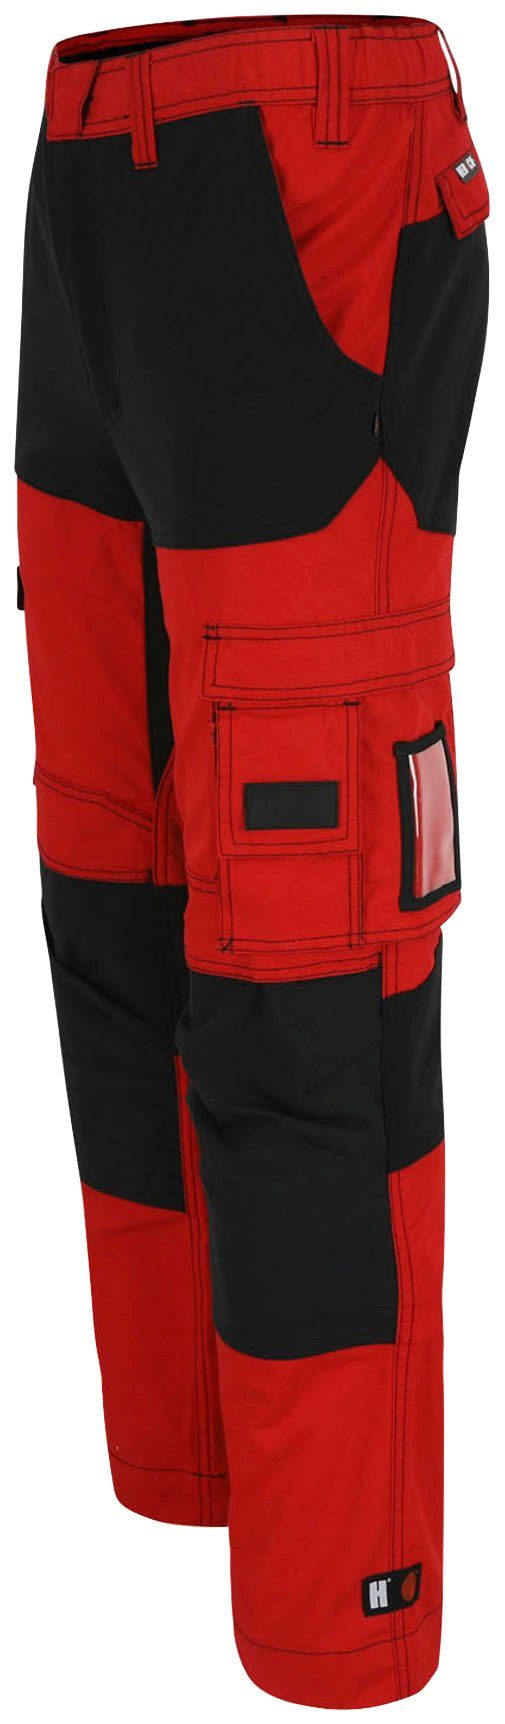 Arbeitshose rot/schwarz verstärkte Hoses Multi-Pocket, Herock Hector Knietaschen Knopf, 4-Wege-Stretch, verdeckter